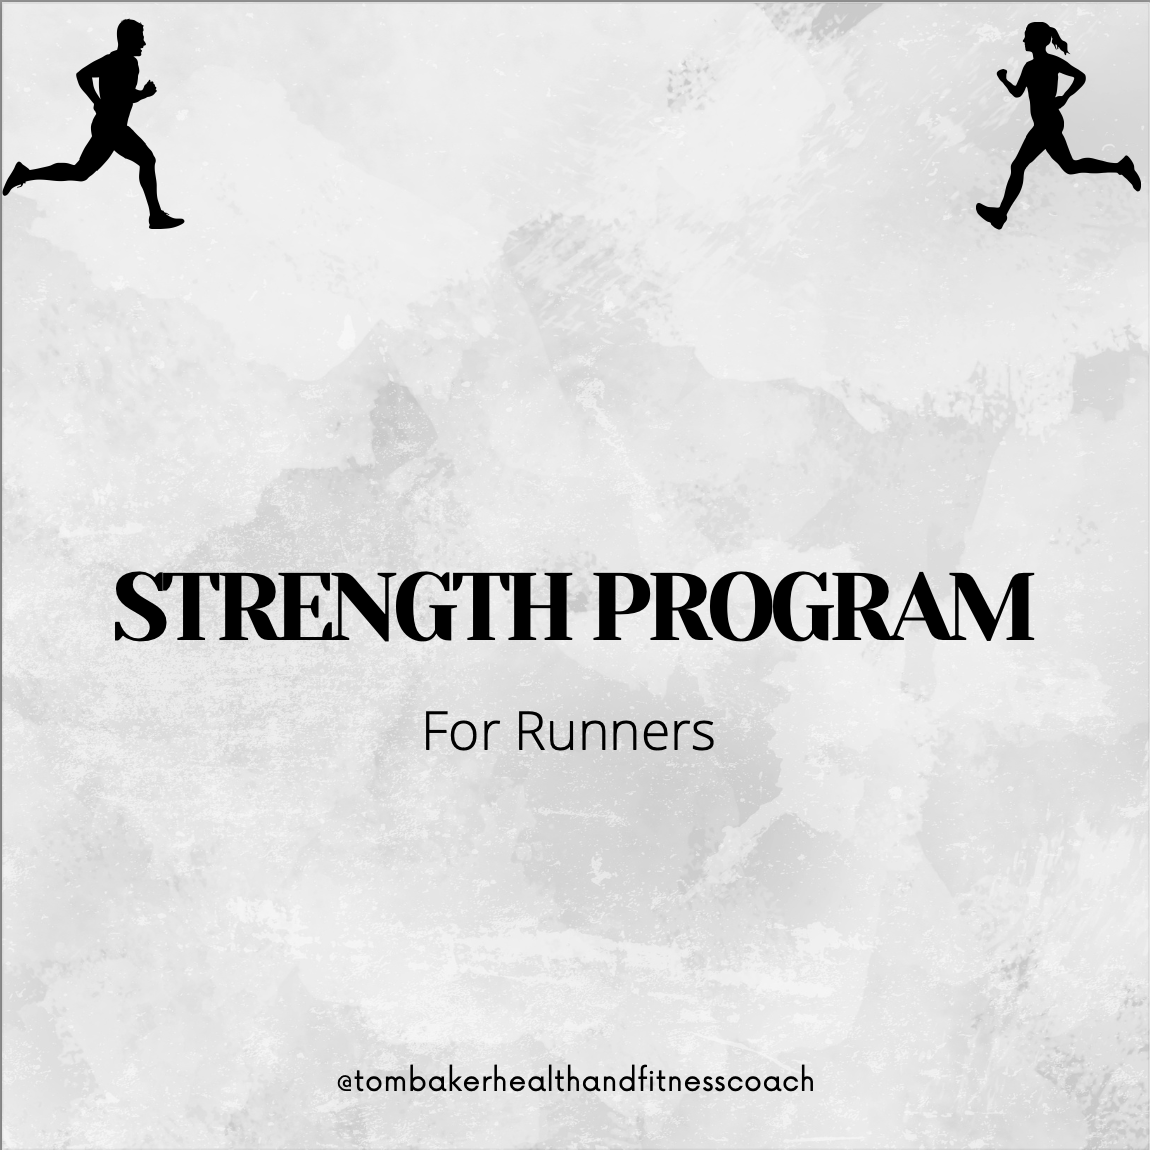 Marathon program + Runners strength training combo